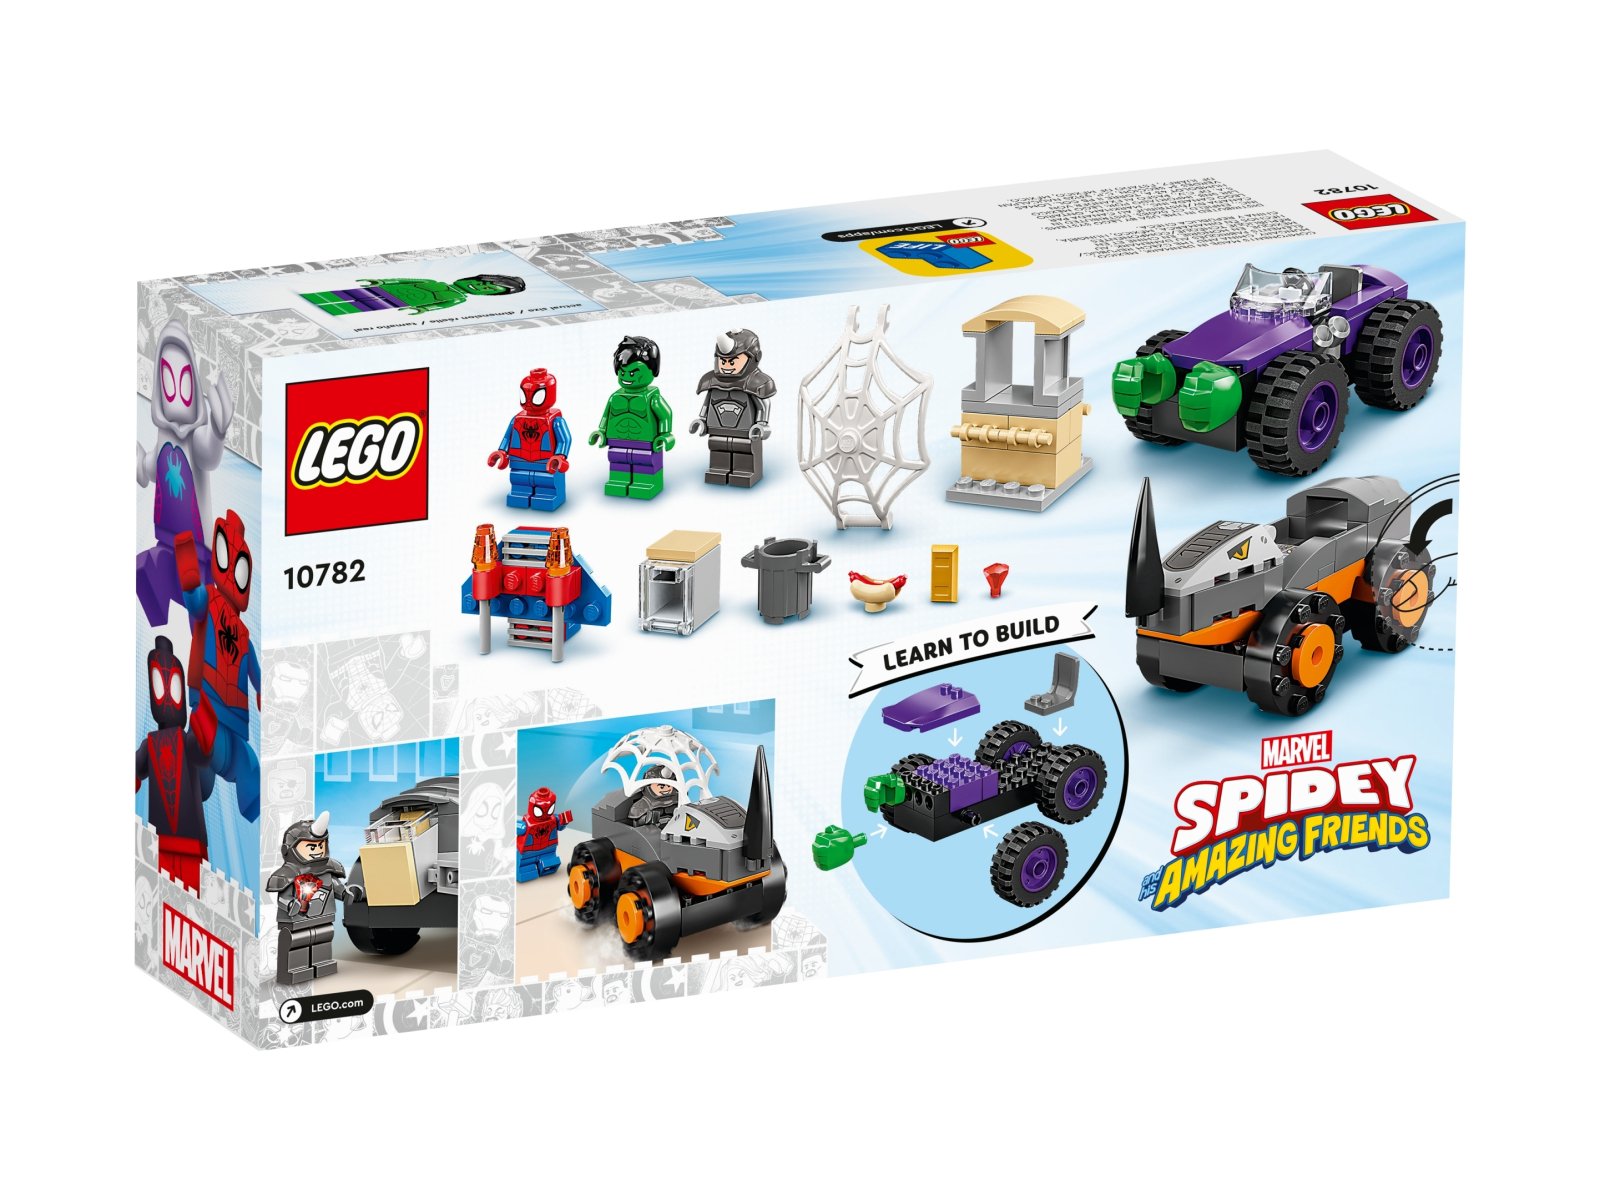 LEGO 10782 Marvel Hulk kontra Rhino — starcie pojazdów